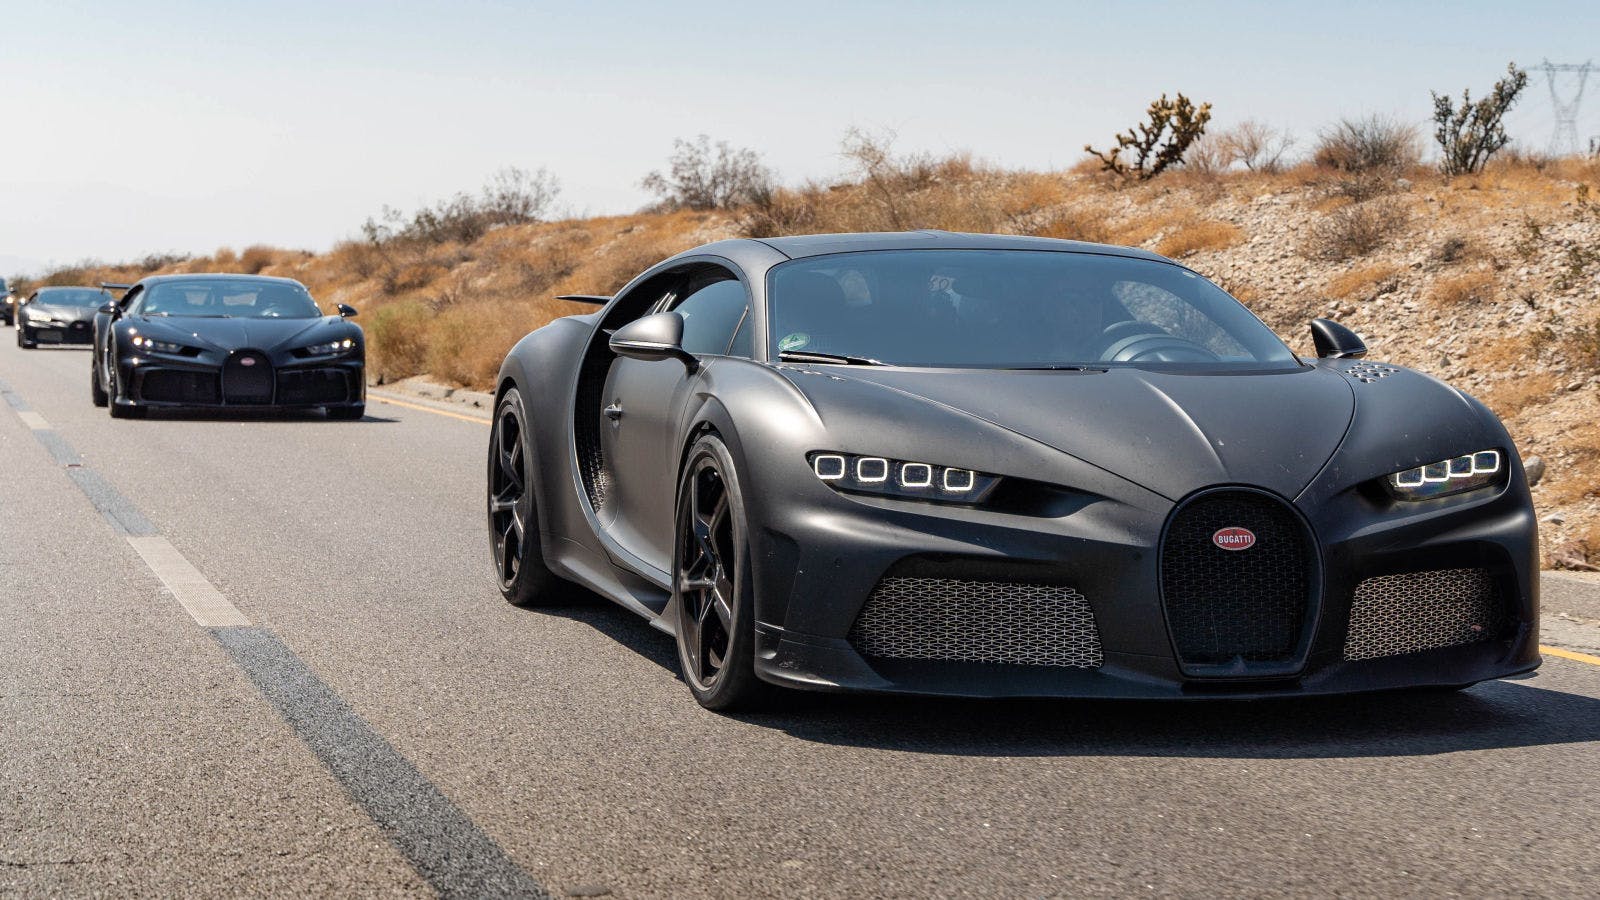 Essais par temps chaud : Tous les modèles Bugatti doivent fonctionner parfaitement, quelle que soit la température.